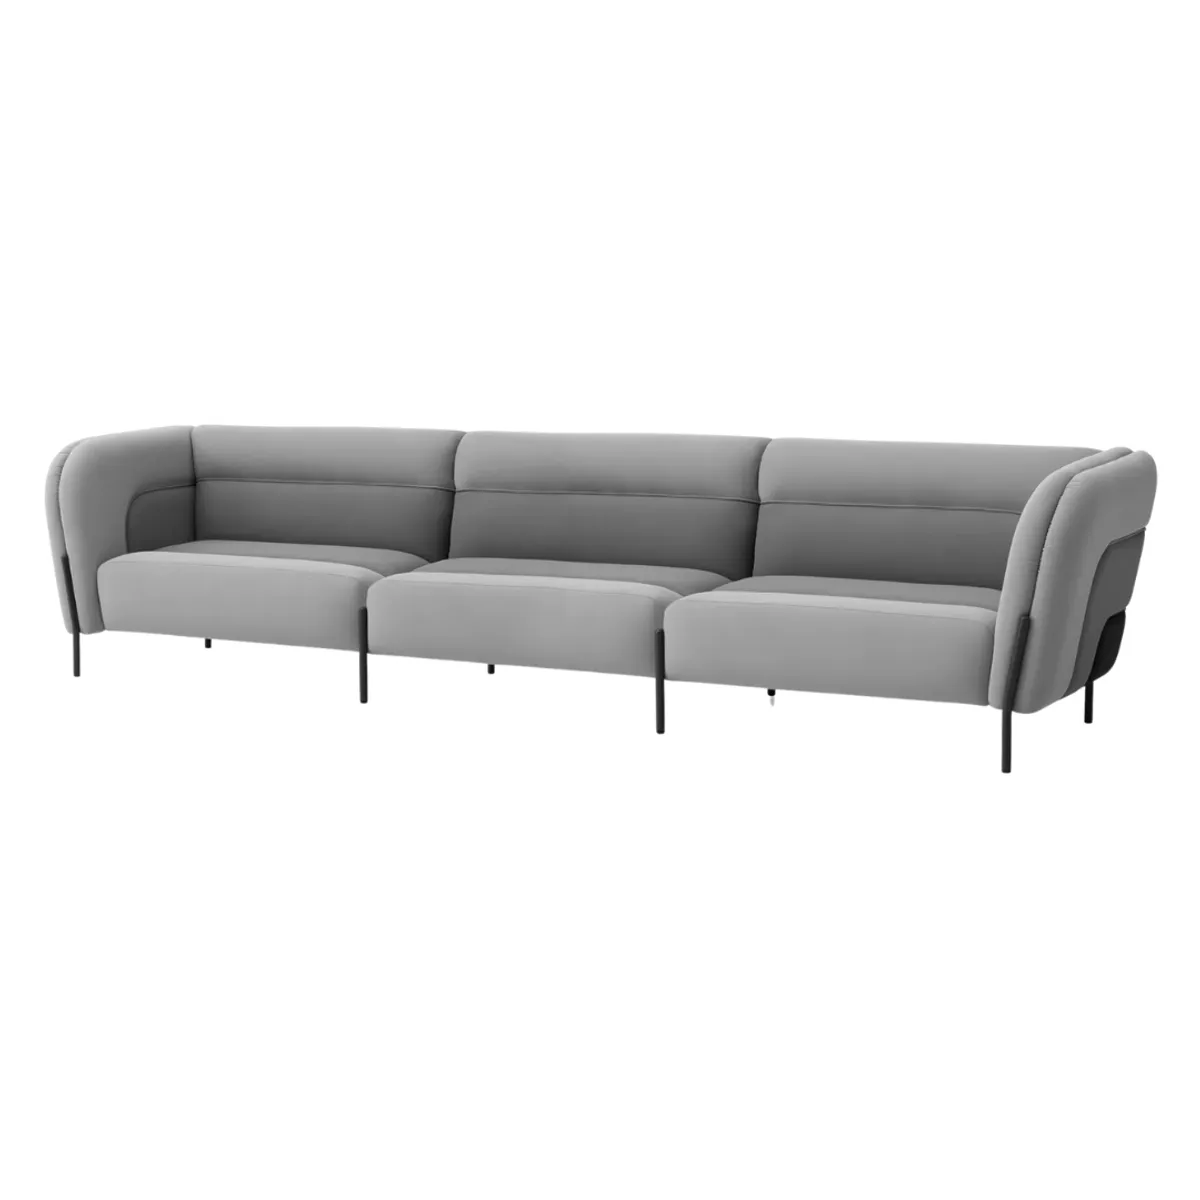 Drake modular sofa 5